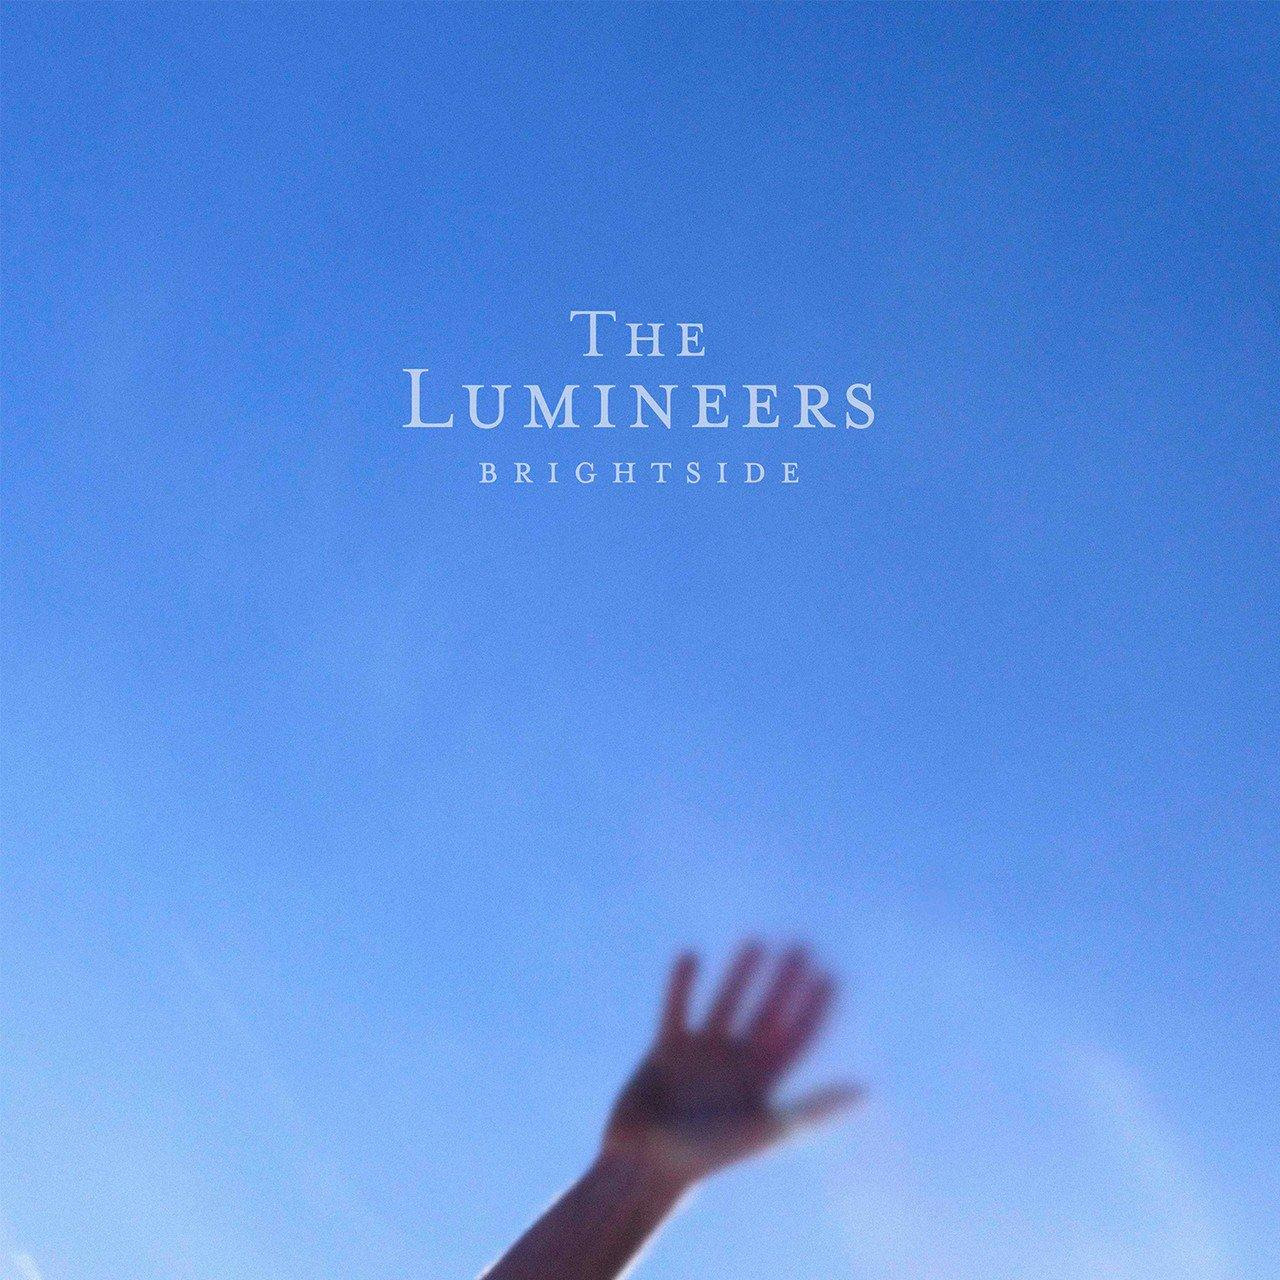 Виниловая пластинка Lumineers, The, Brightside (0602435739069) цена и фото